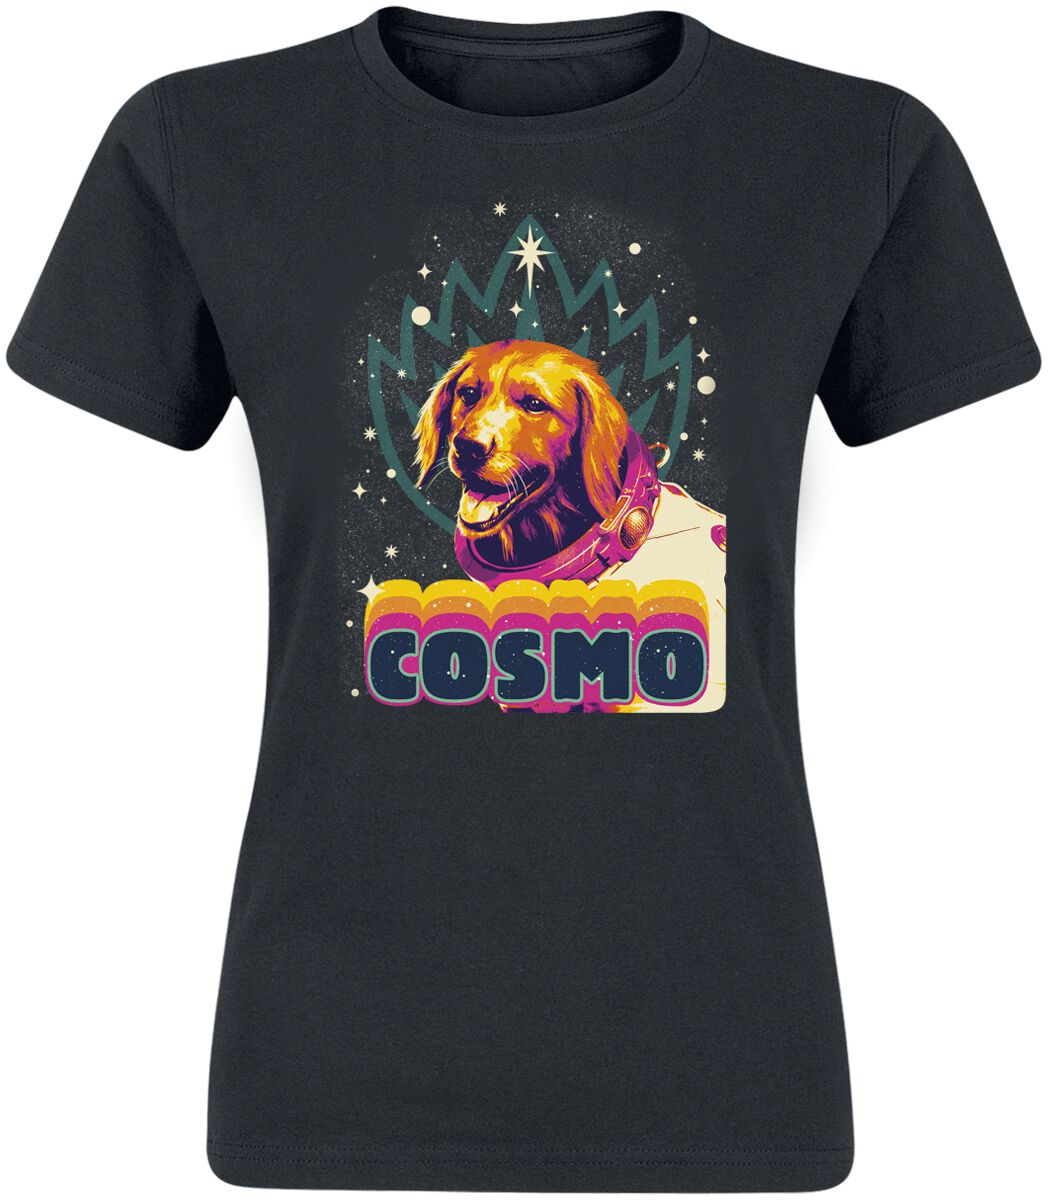 Guardians Of The Galaxy - Marvel T-Shirt - Vol. 3 - Cosmo - S bis L - für Damen - Größe M - schwarz  - EMP exklusives Merchandise!